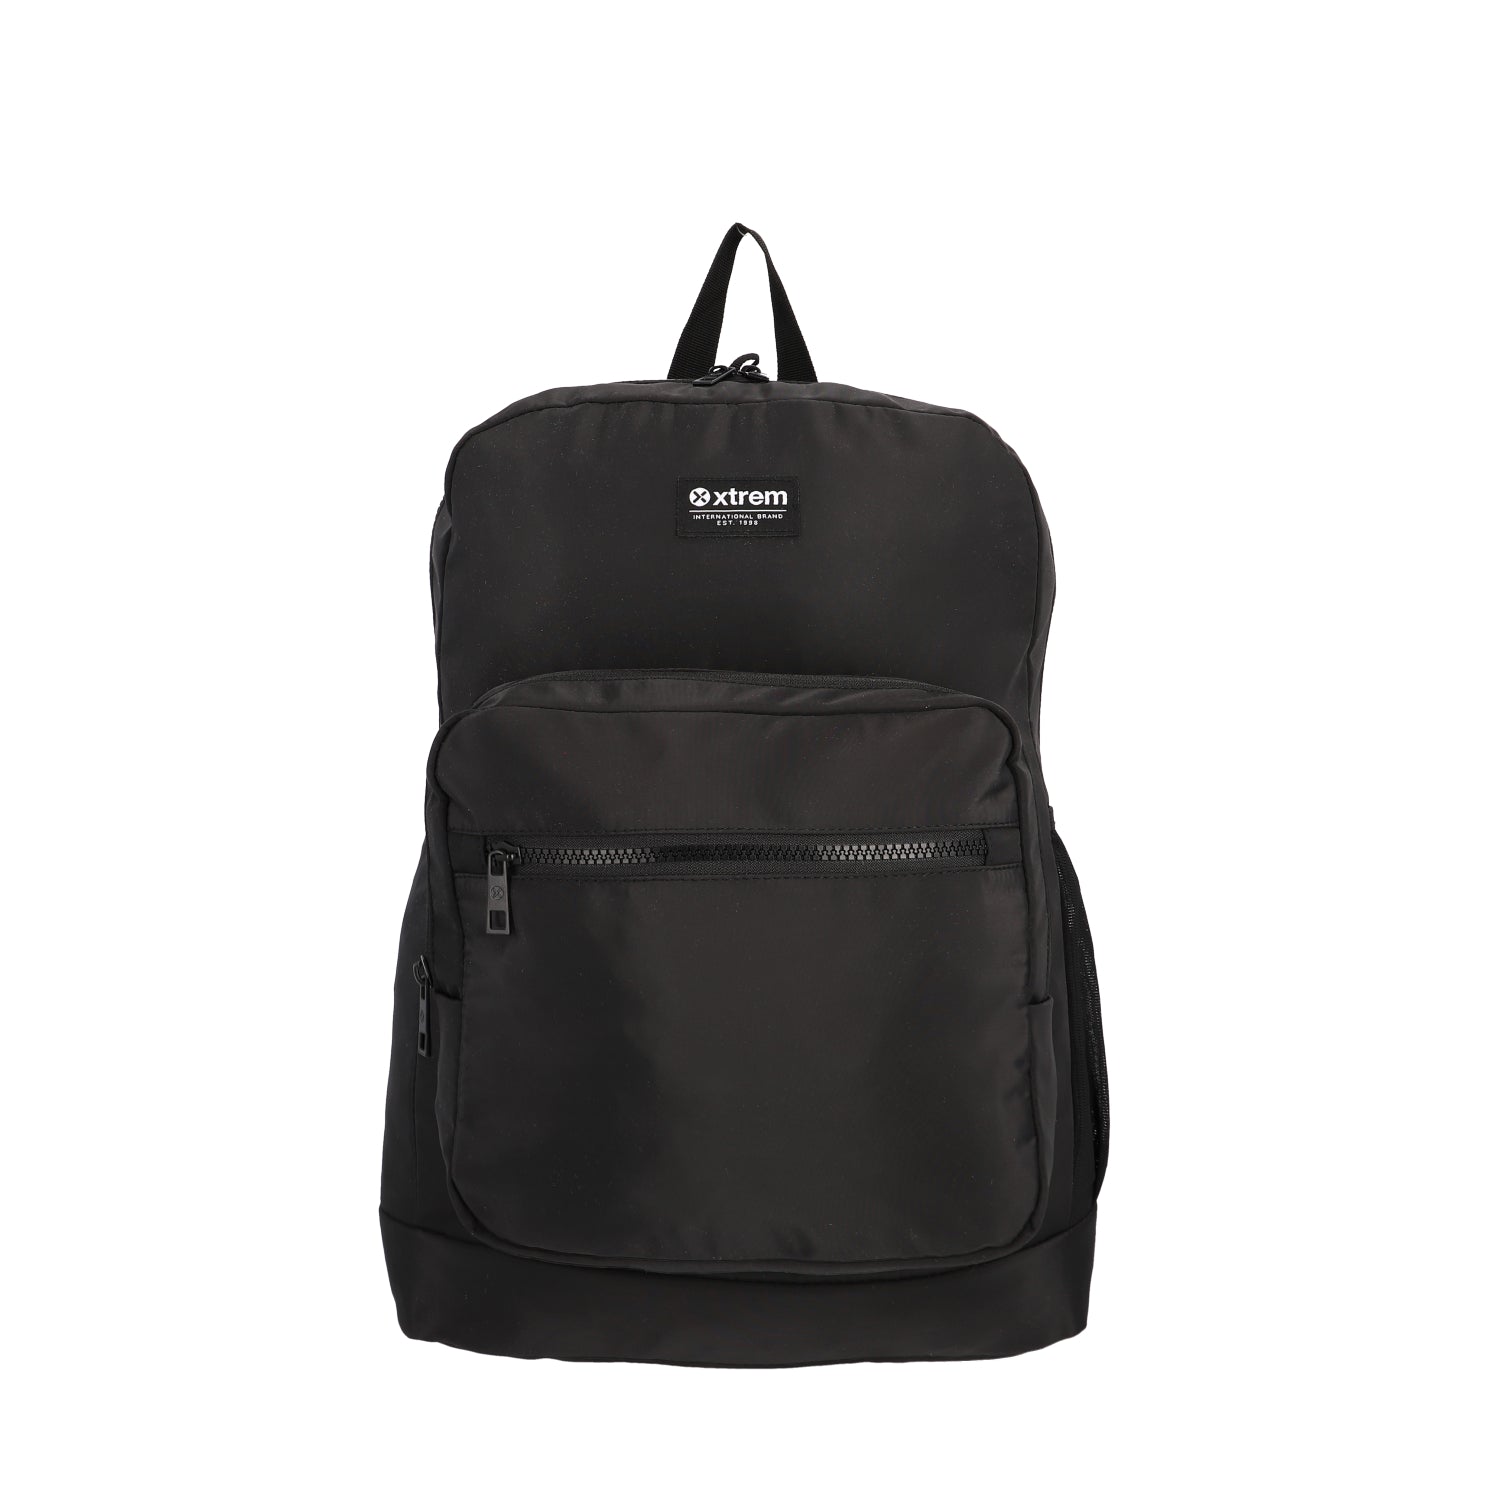 Mochila Lifestyle Backpack Vito 244 Black